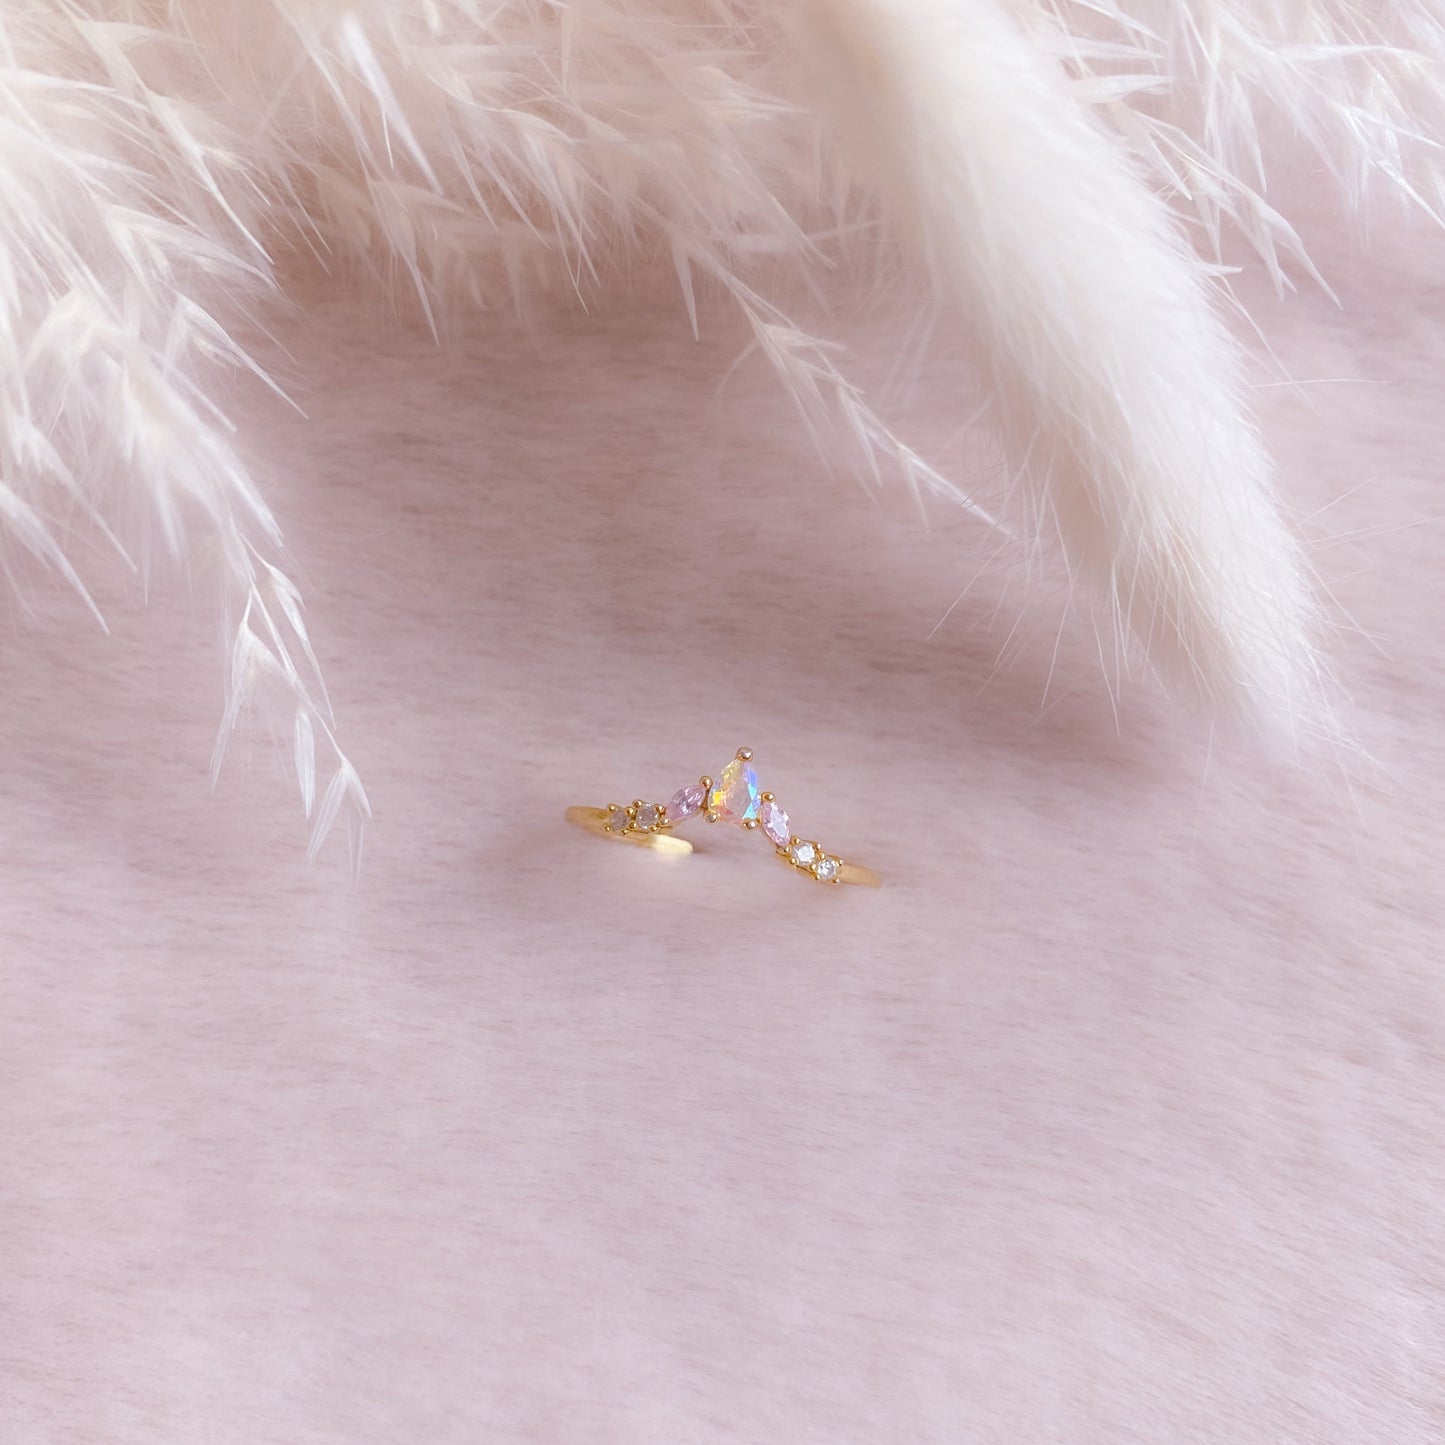 Princess Fantasy Ring